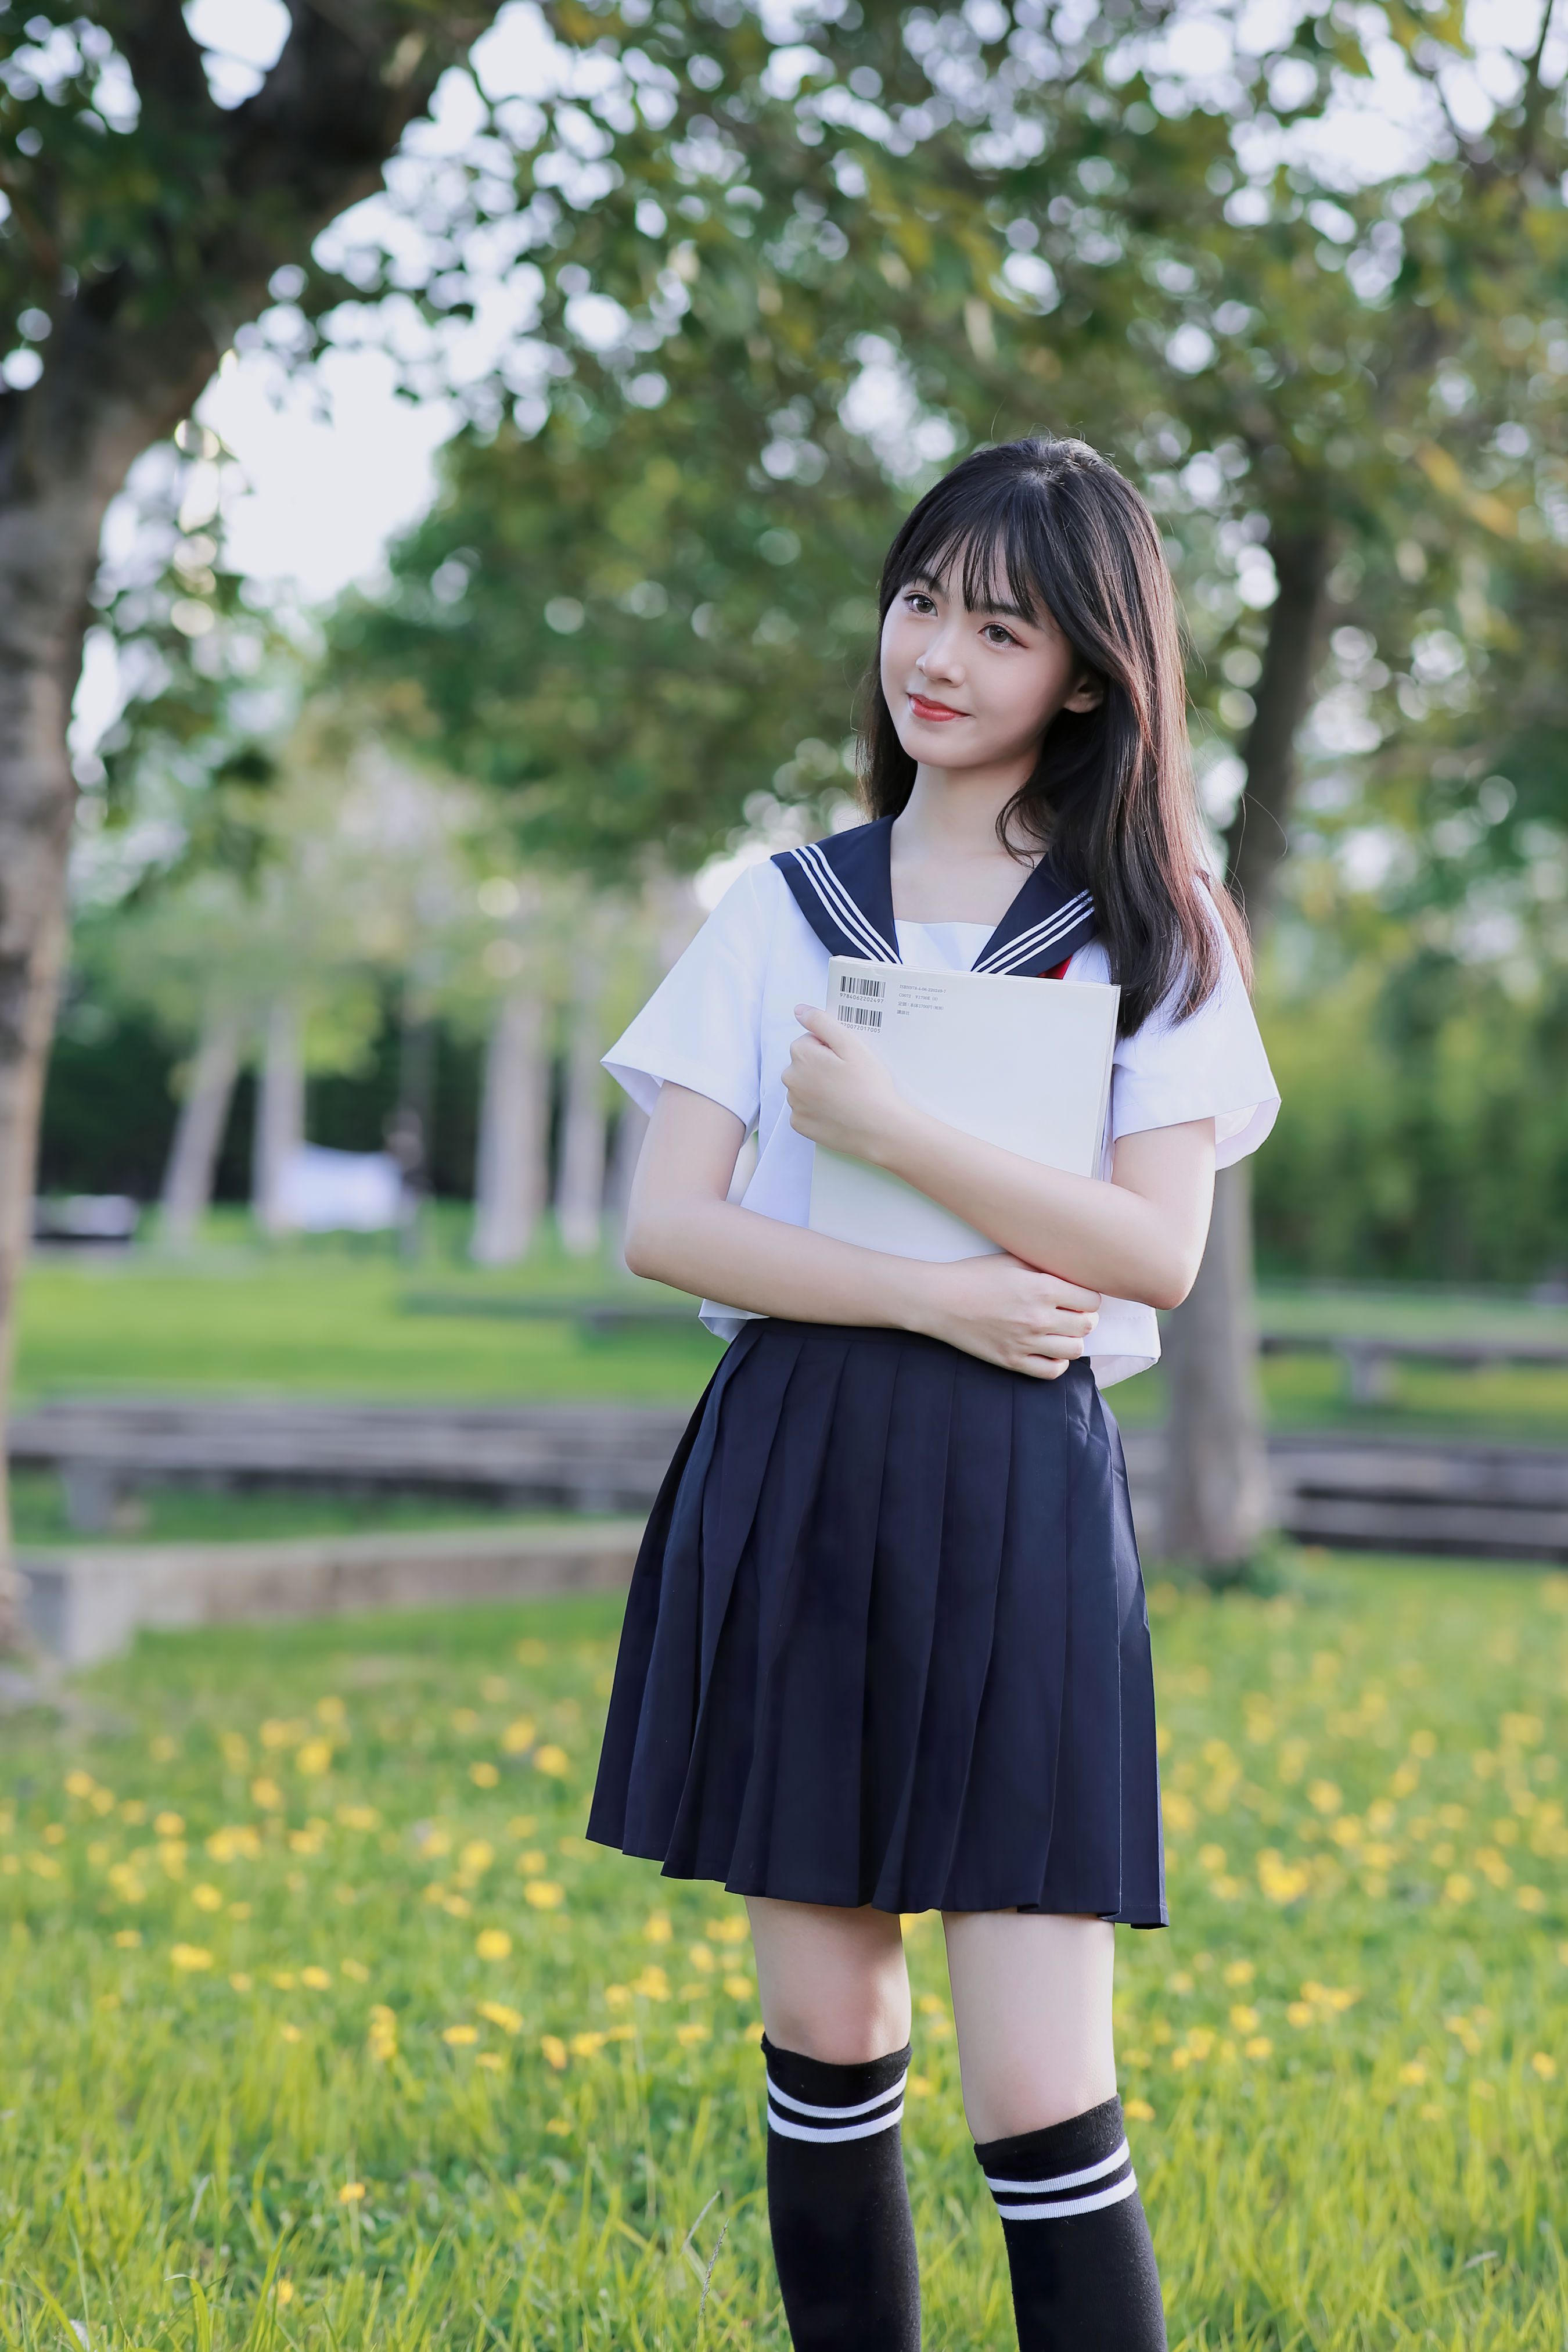 竹林背景中美丽的亚洲日本高中女生制服画像 库存照片. 图片 包括有 森林, 室外, 绿色, 背包, 表面 - 173806924